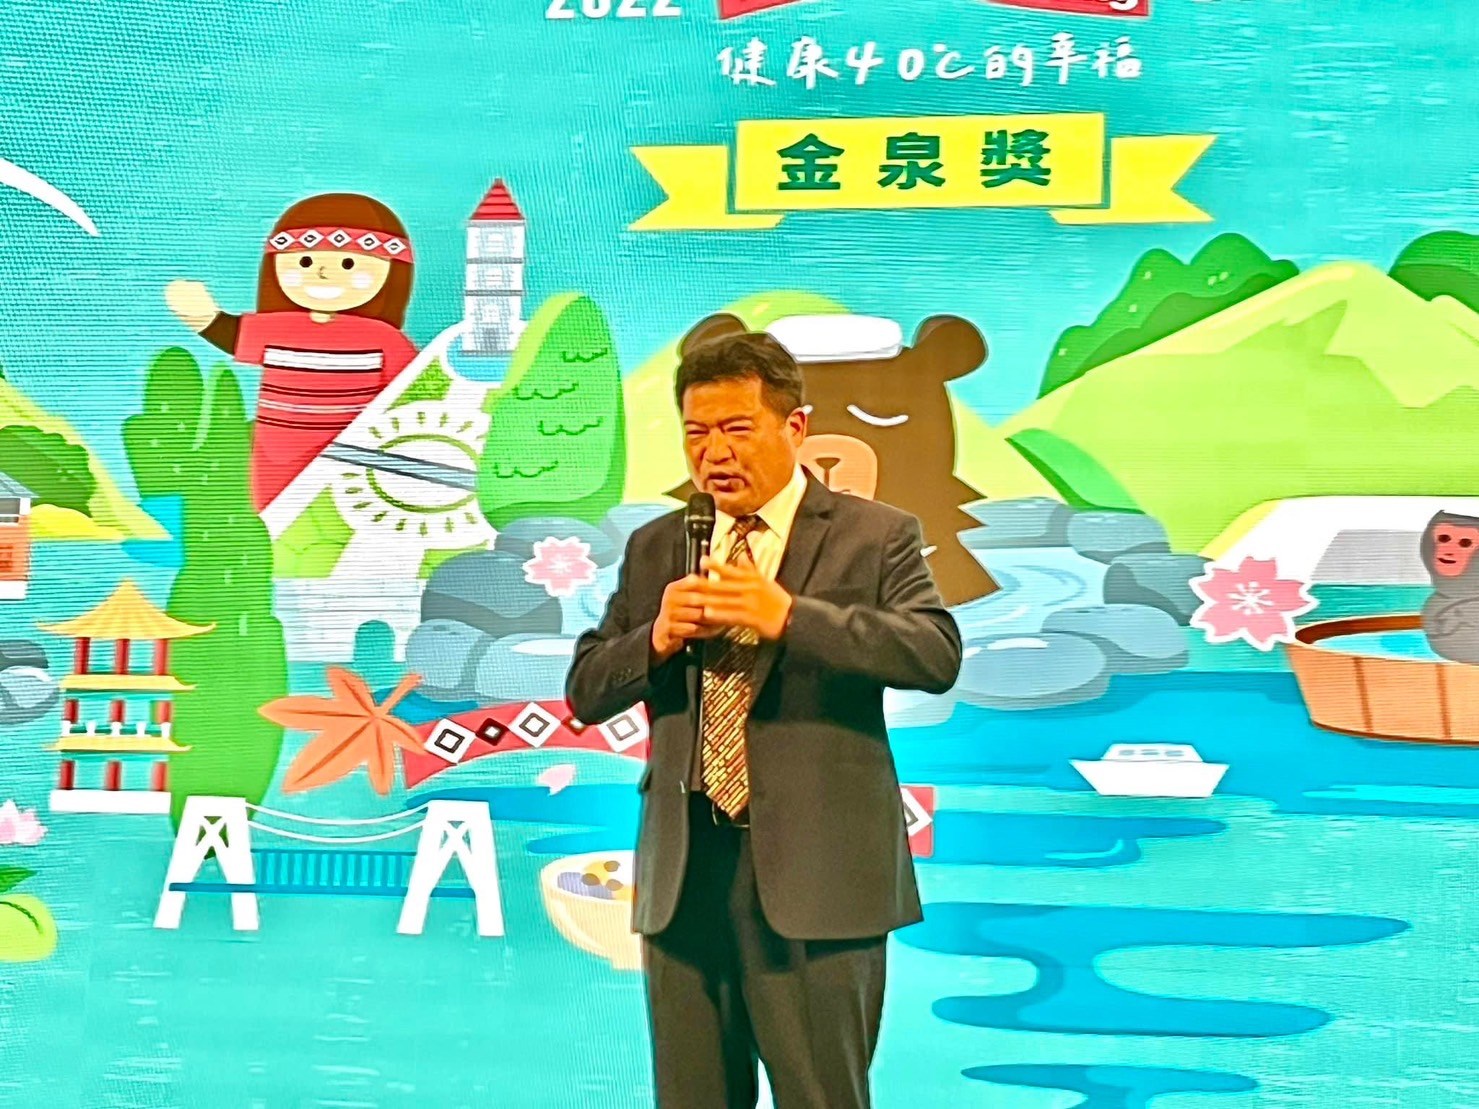 中華民國溫泉觀光協會成立20週年 李吉田理事長呼籲產官學共同打造永續健康城市！